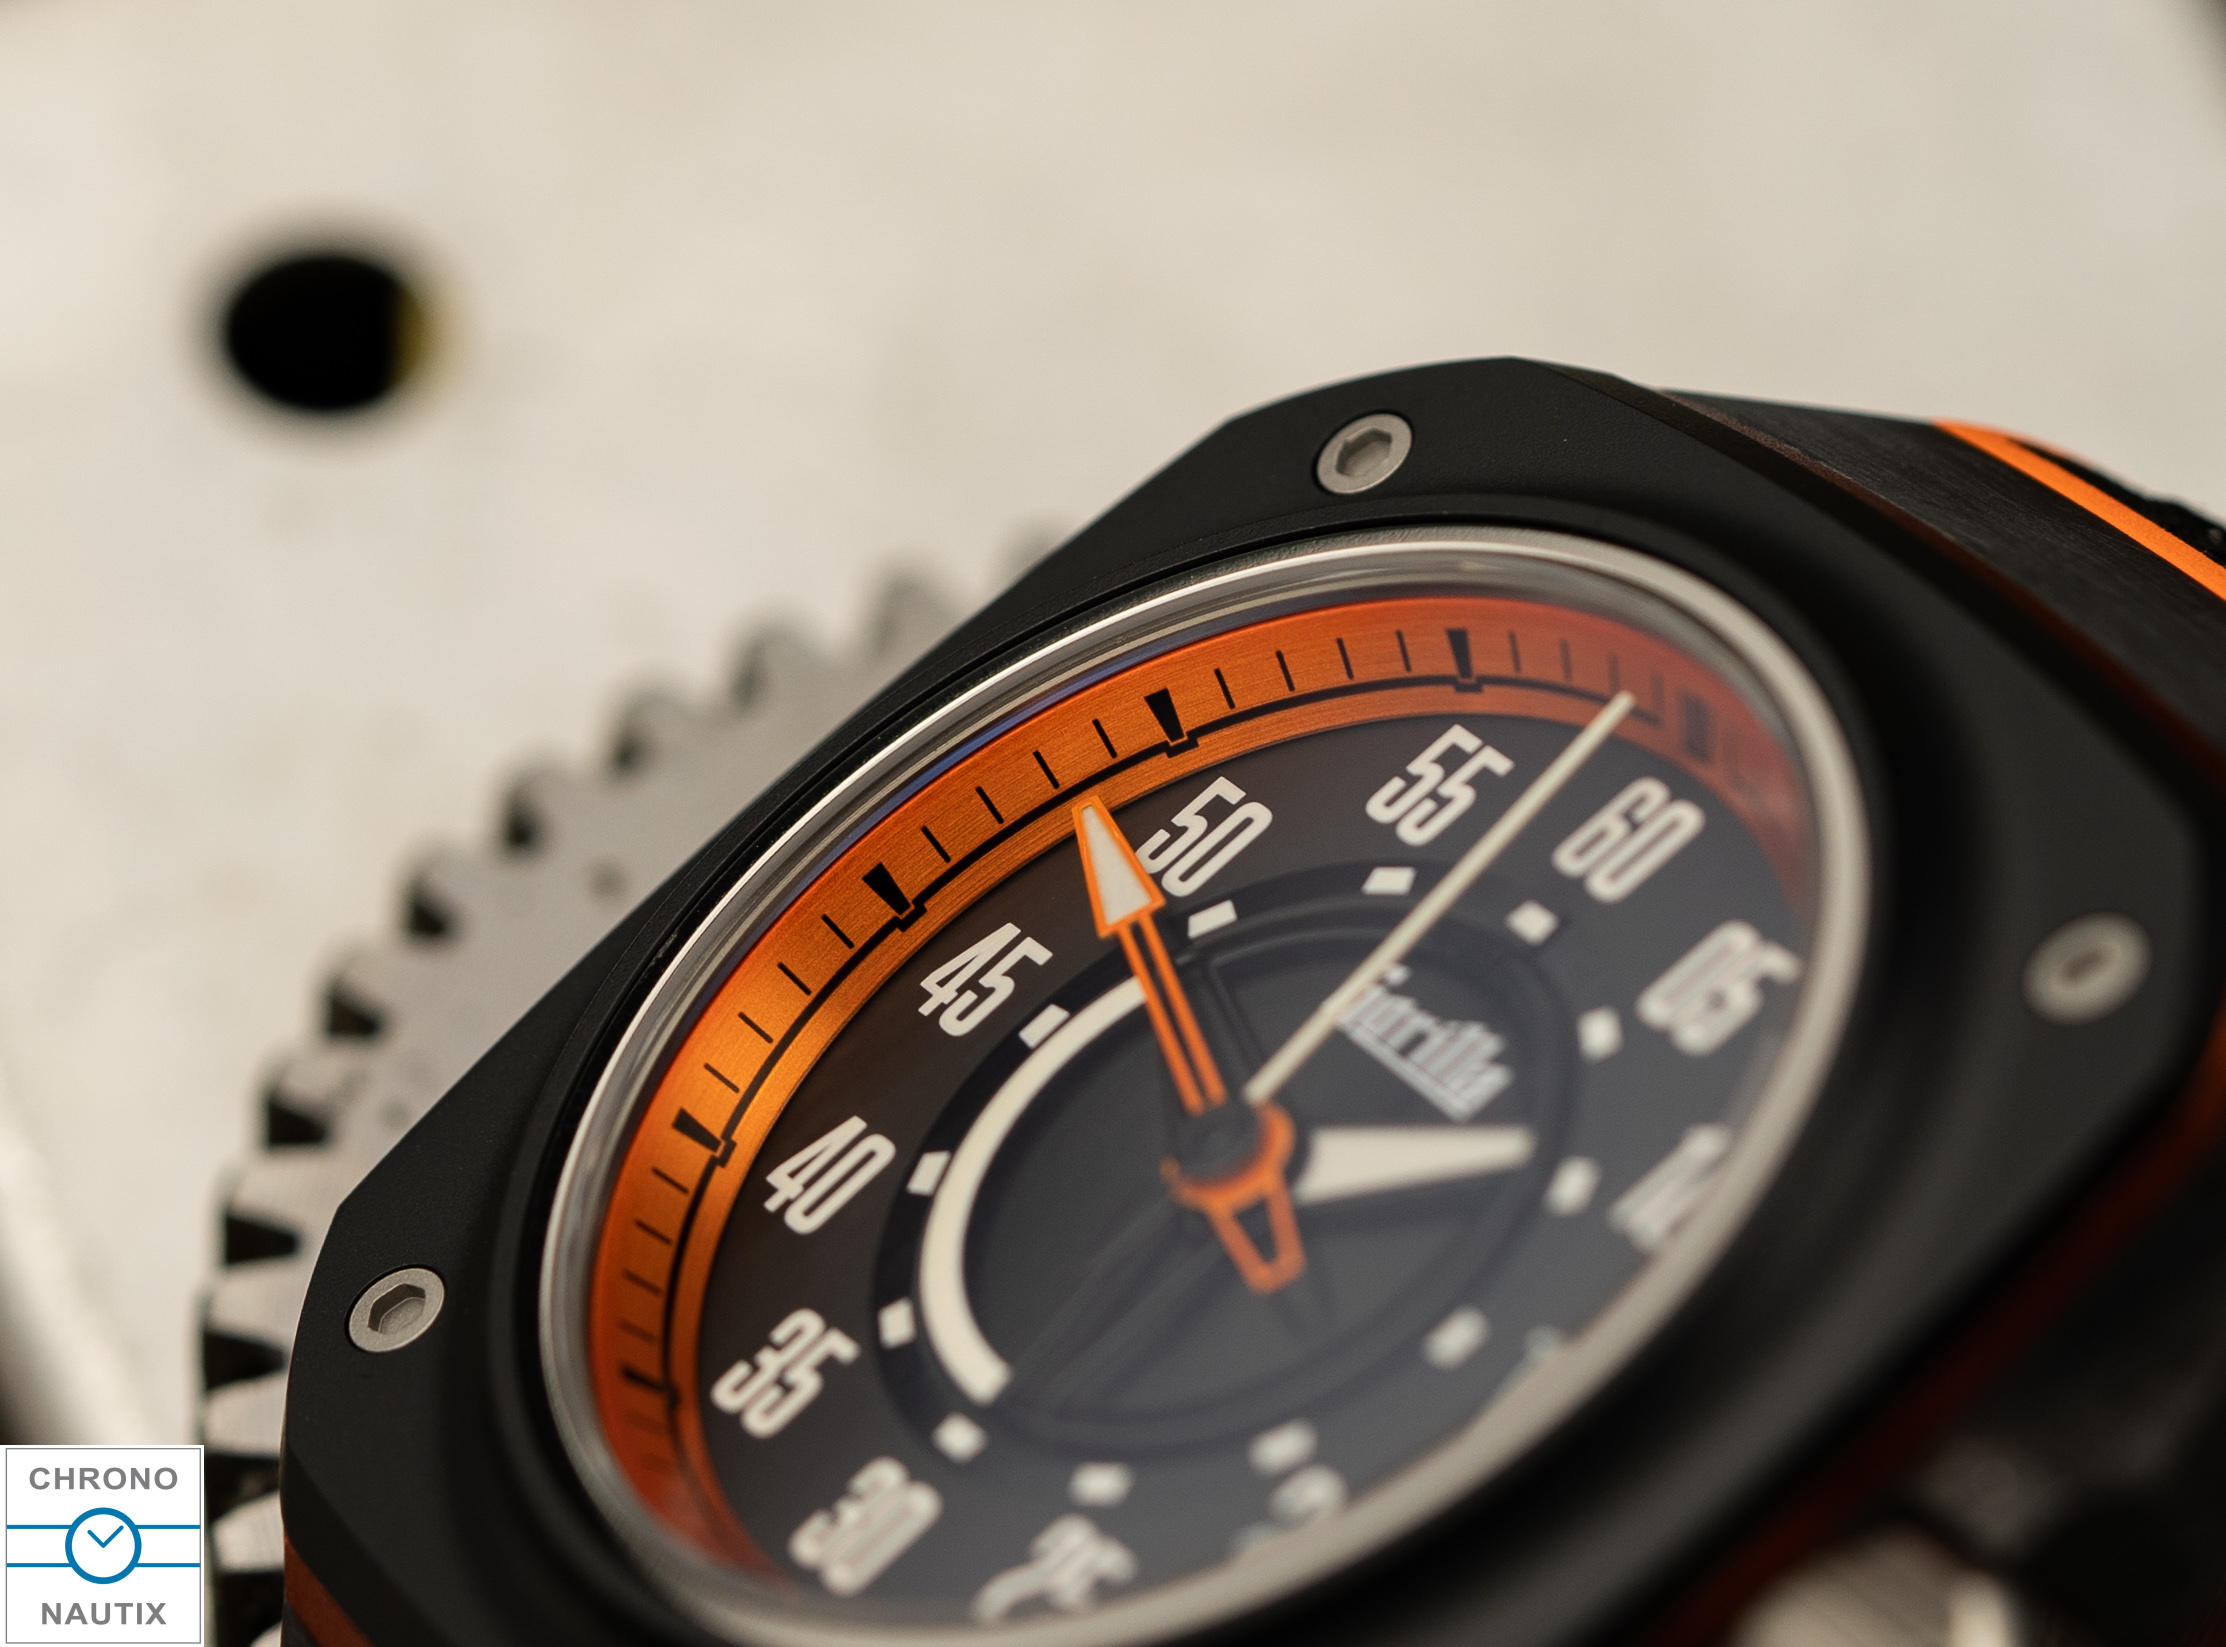 Gorilla Watches Uhren Fastback GT Test 18